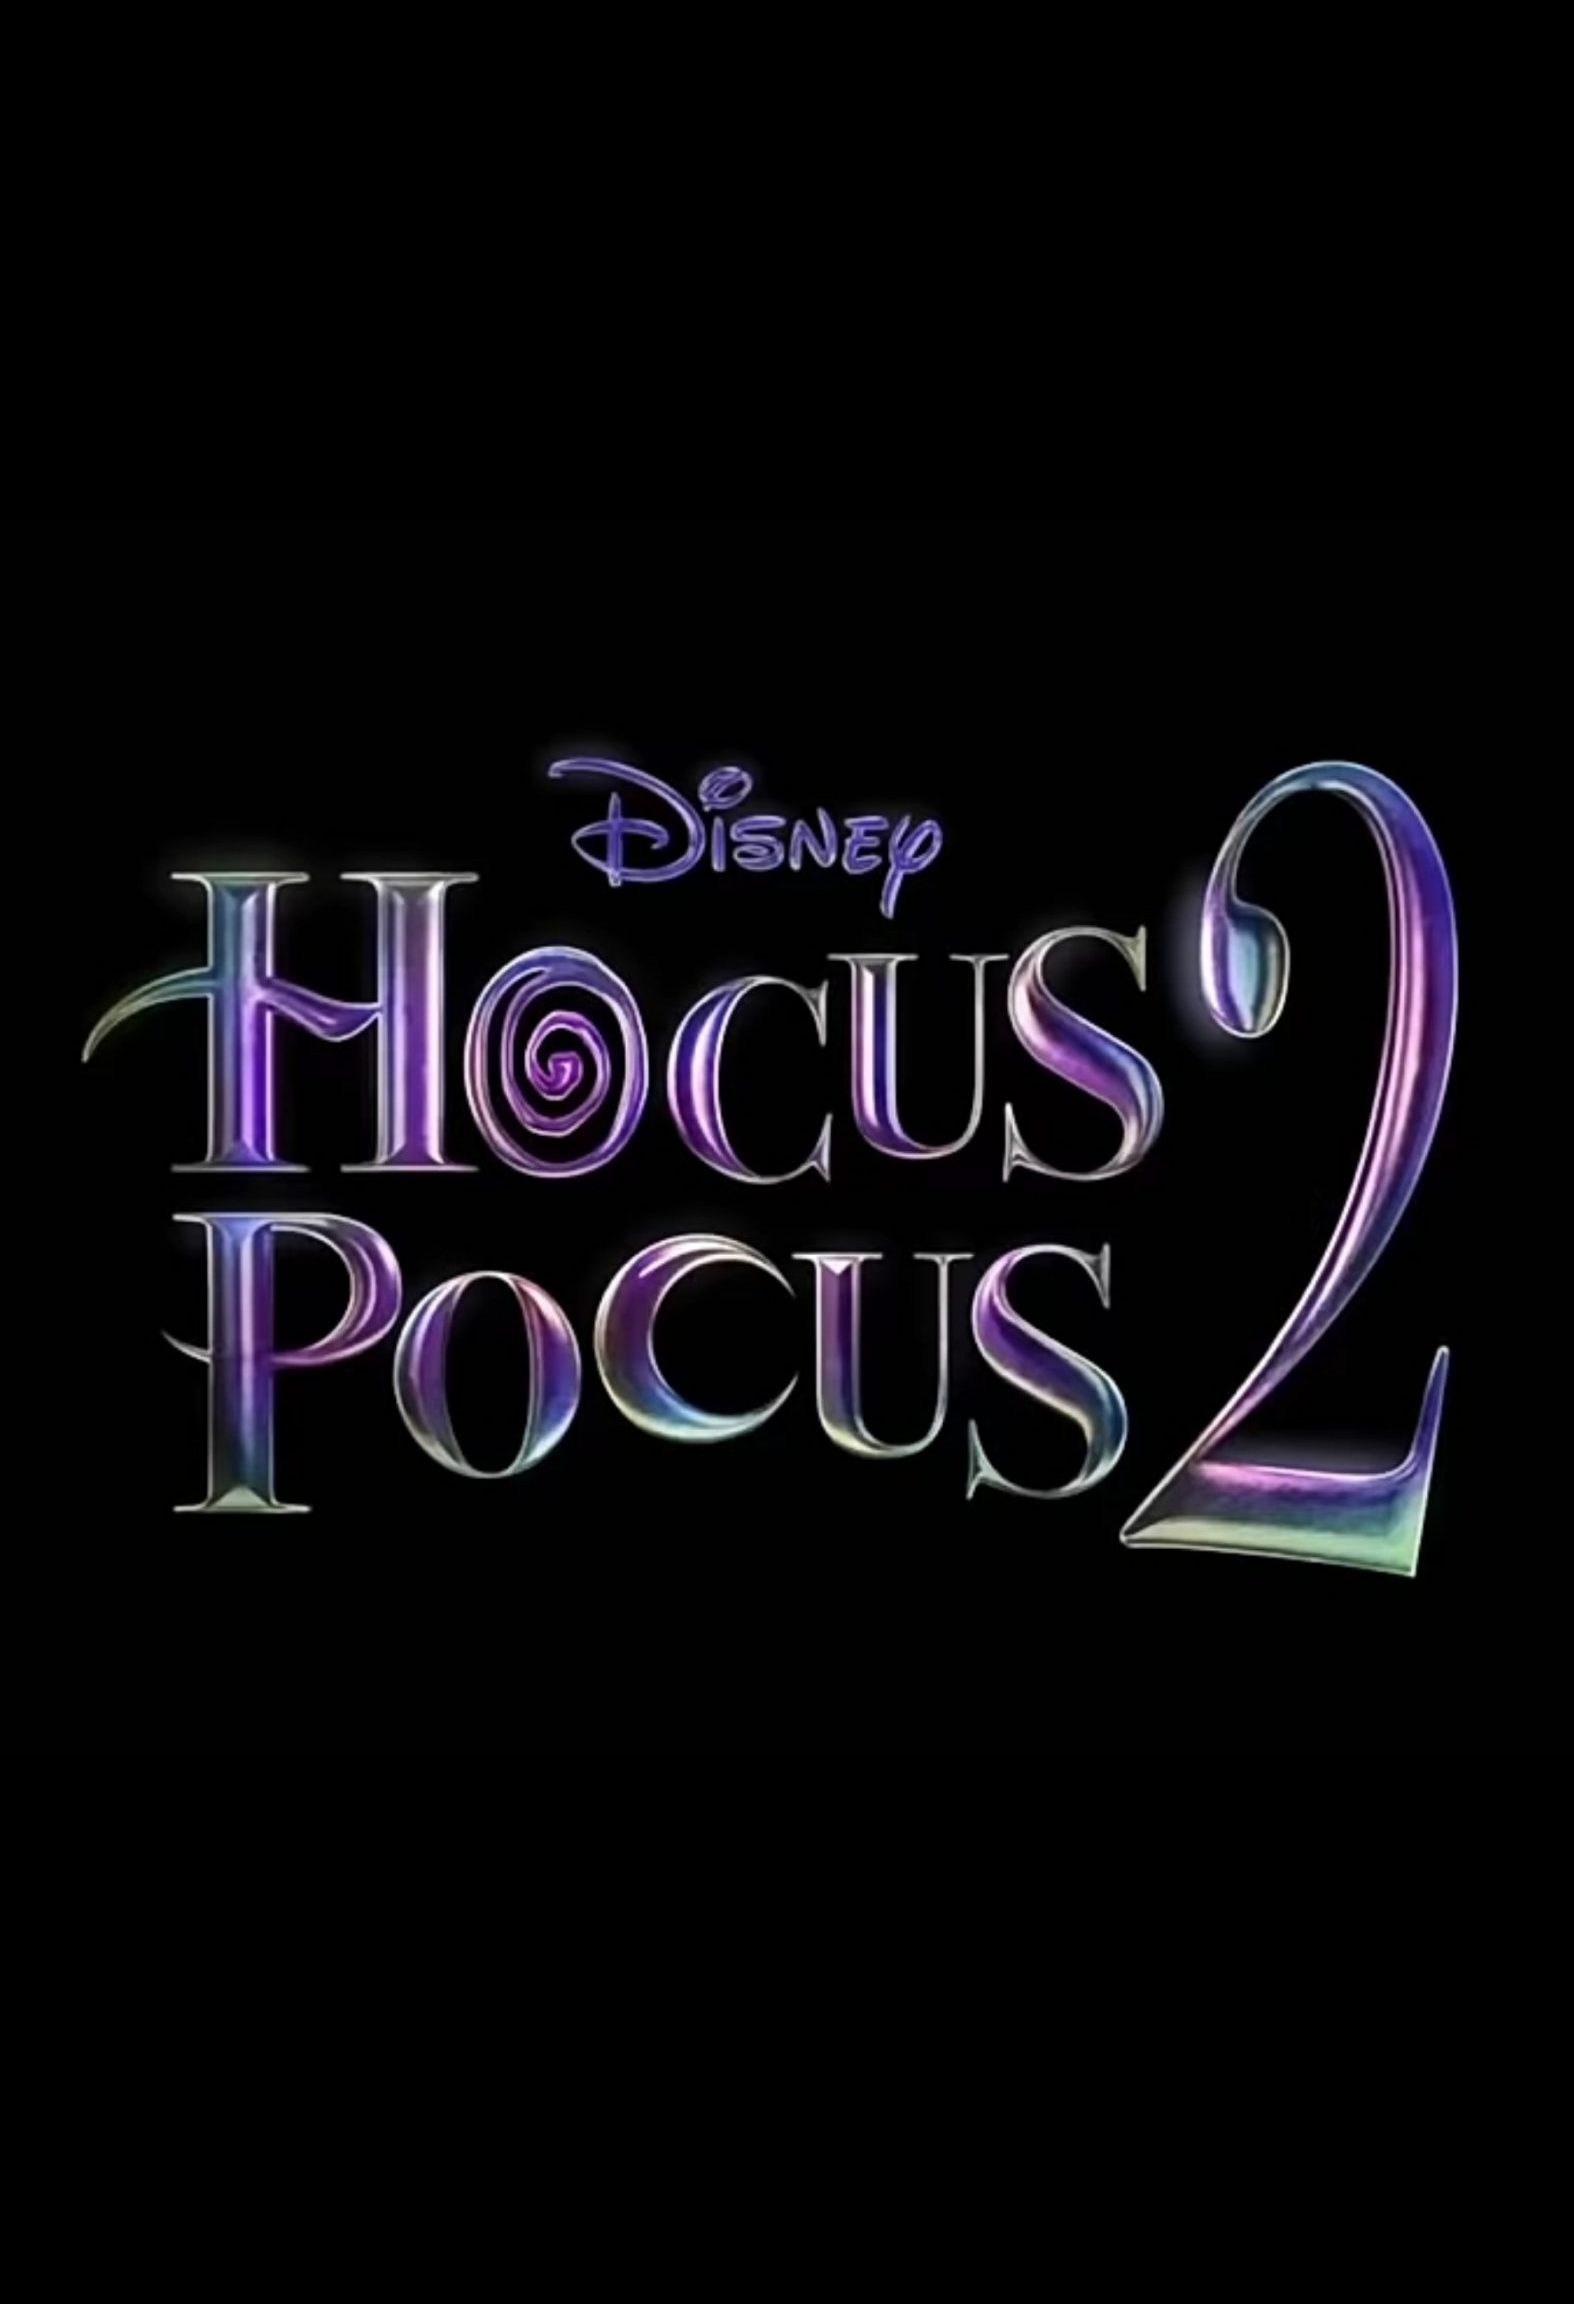 Hocus Pocus 2 Kommt Mit Sarah Jessica Parker, Bette Midler und Kathy Najimy